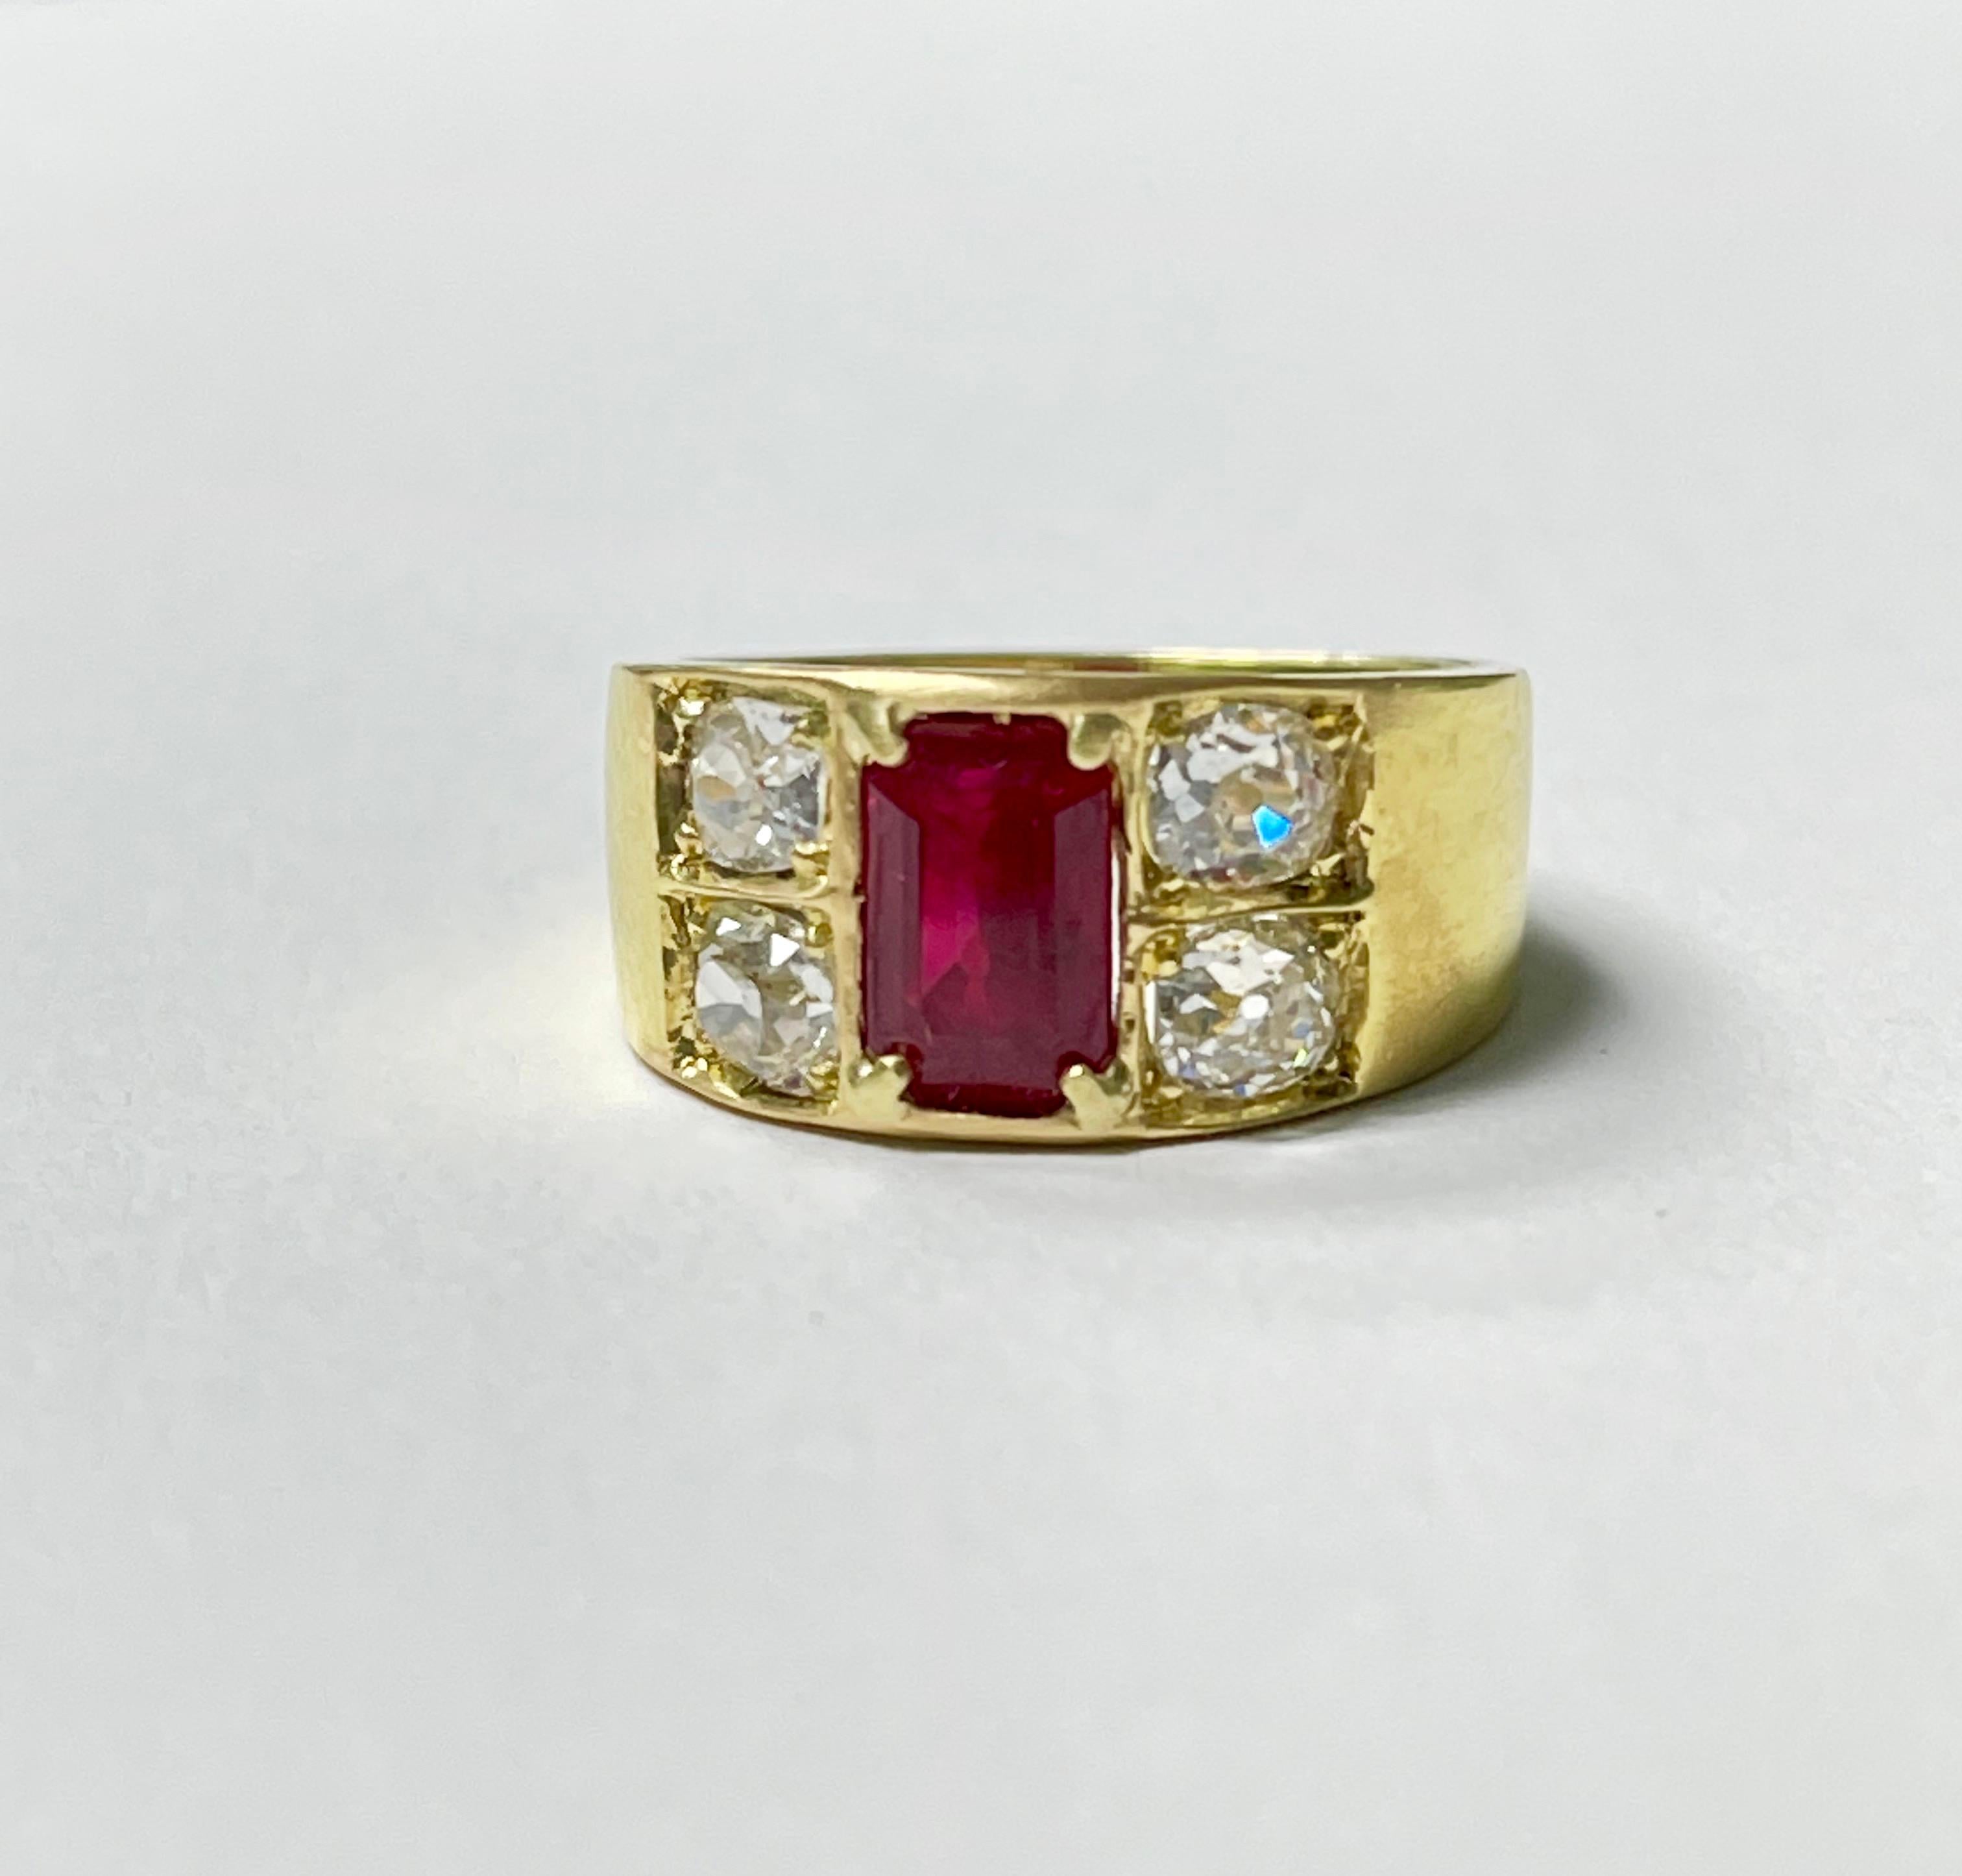 Einzigartiger AGL-zertifizierter Ring aus 18 Karat Gelbgold mit Rubinen und Diamanten im Smaragd-Schliff, handgefertigt. 
Die Einzelheiten sind wie folgt: 
Smaragdschliff Rubin Gewicht : 2.06 Karat
Gewicht der Diamanten: 1,70 Karat / 4 Diamanten im